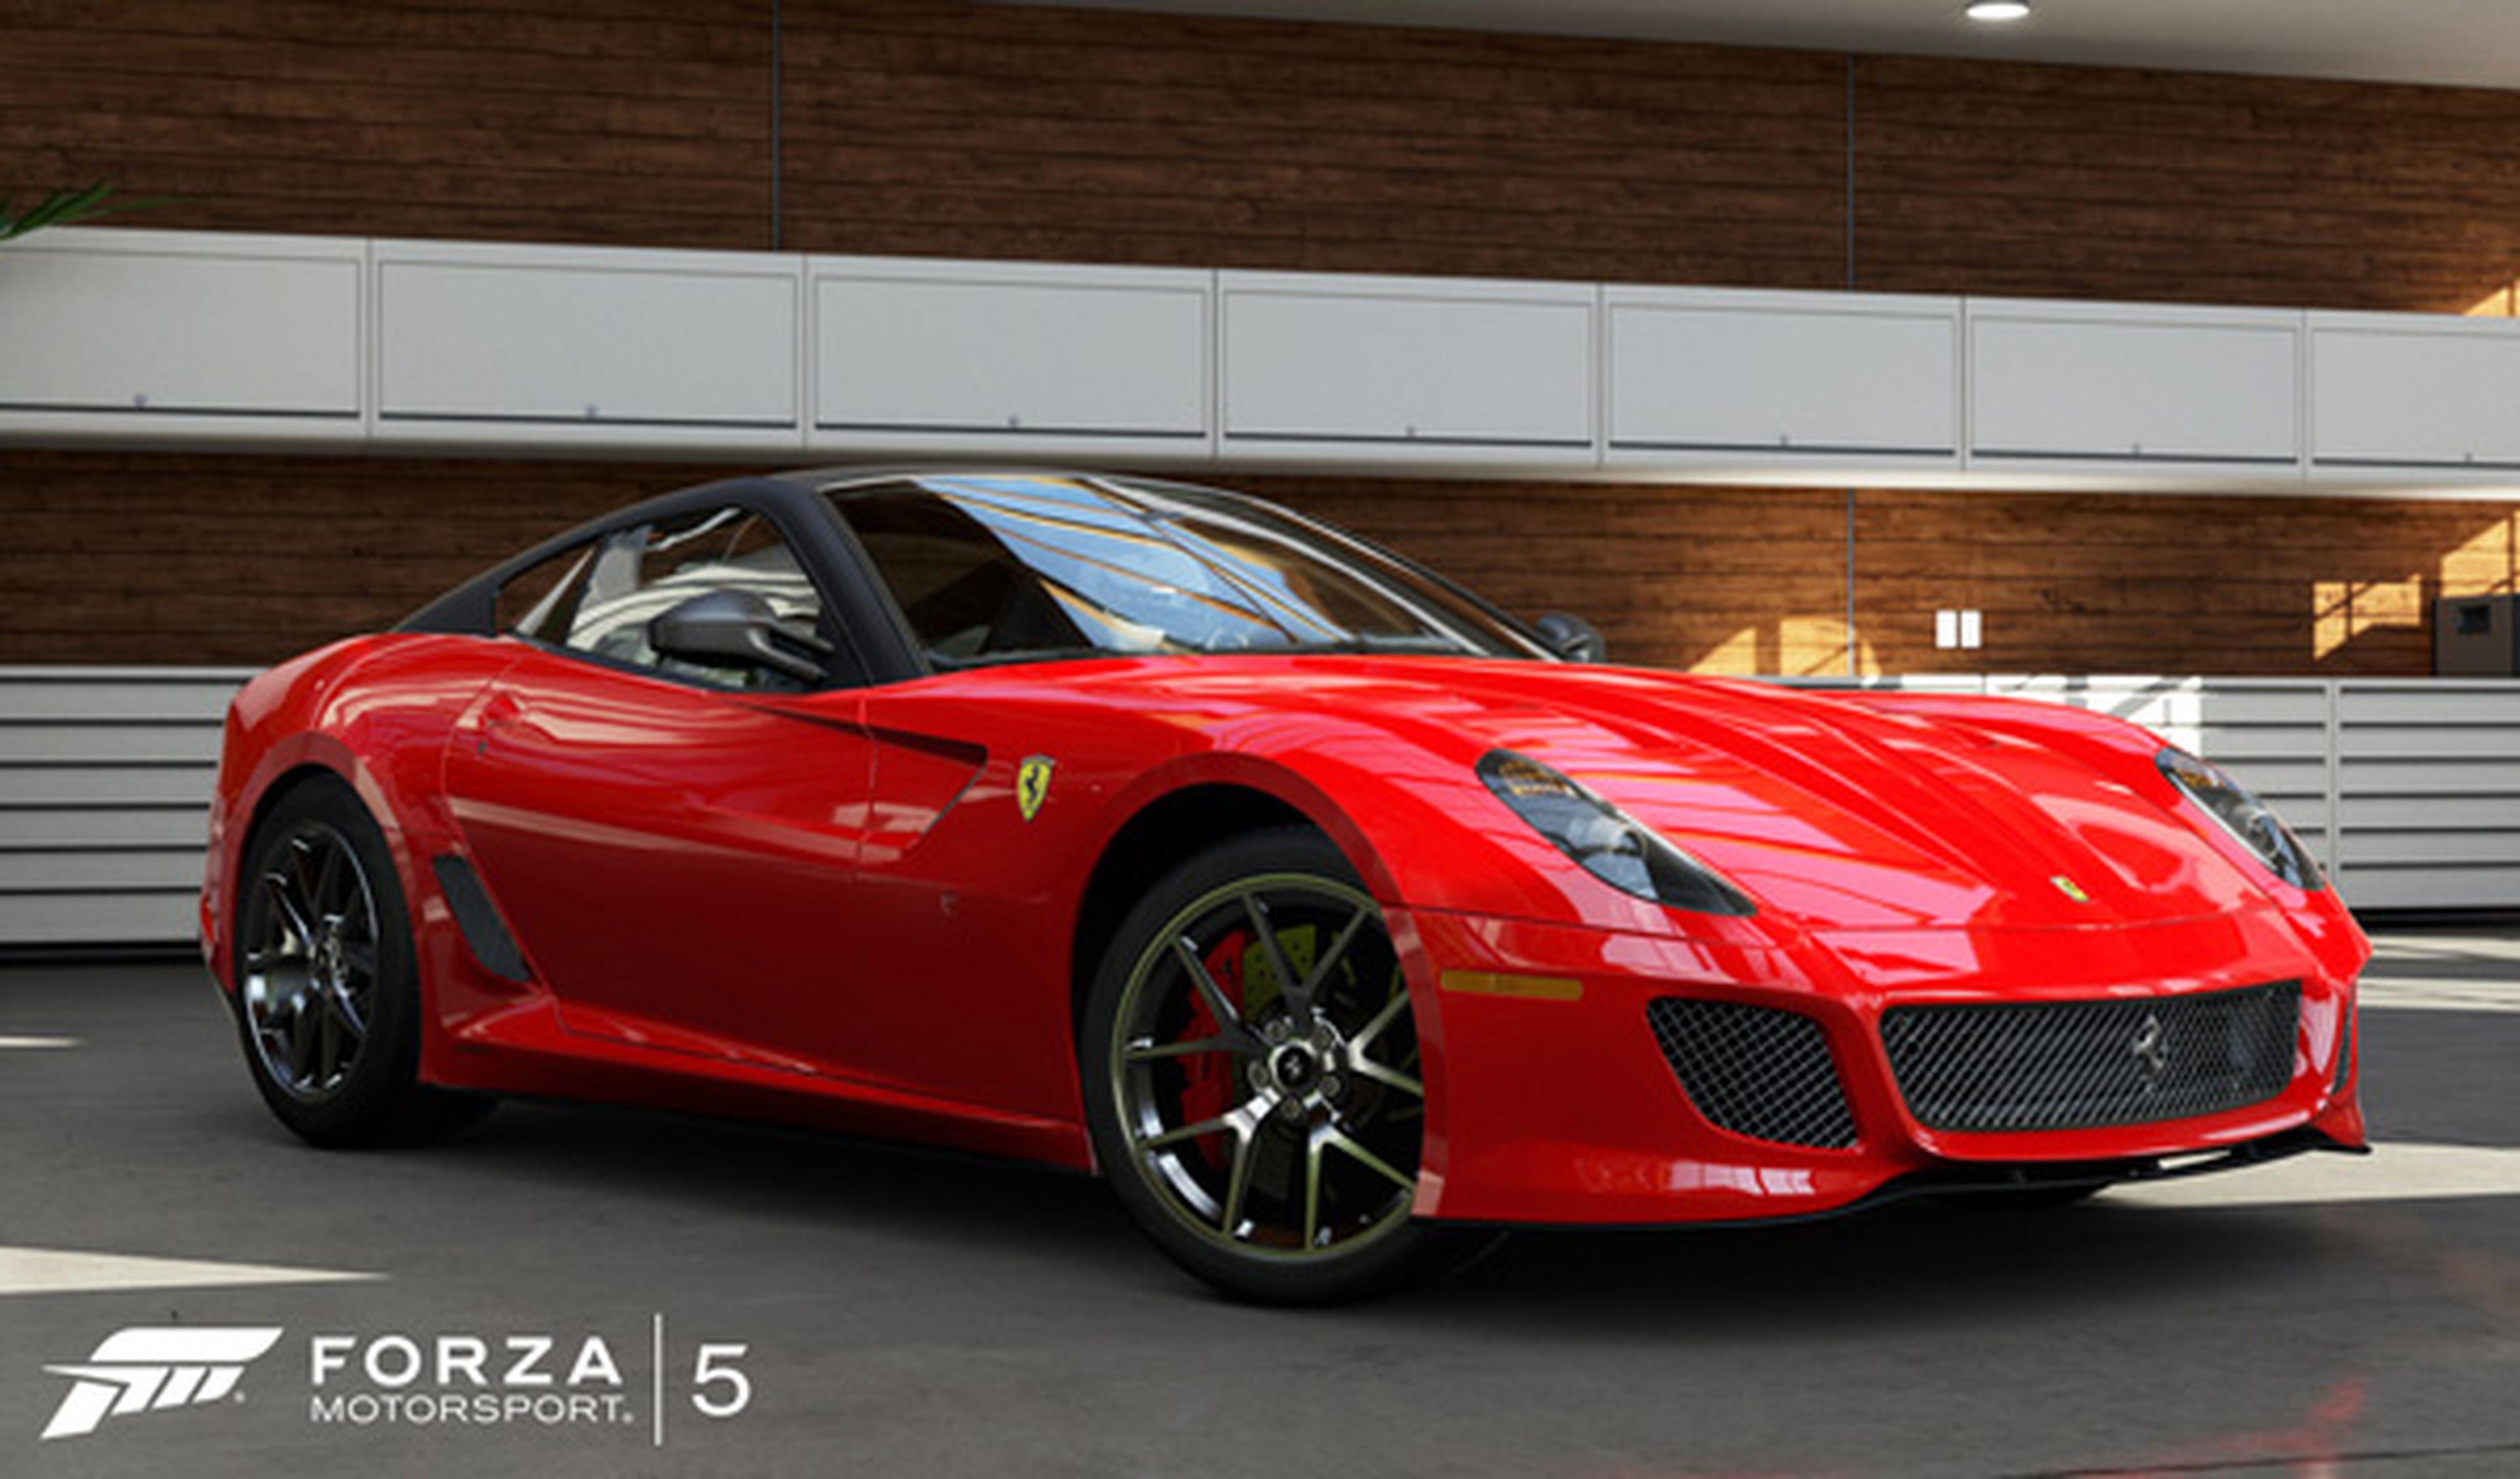 Forza Motorsport 5, ya lo hemos probado